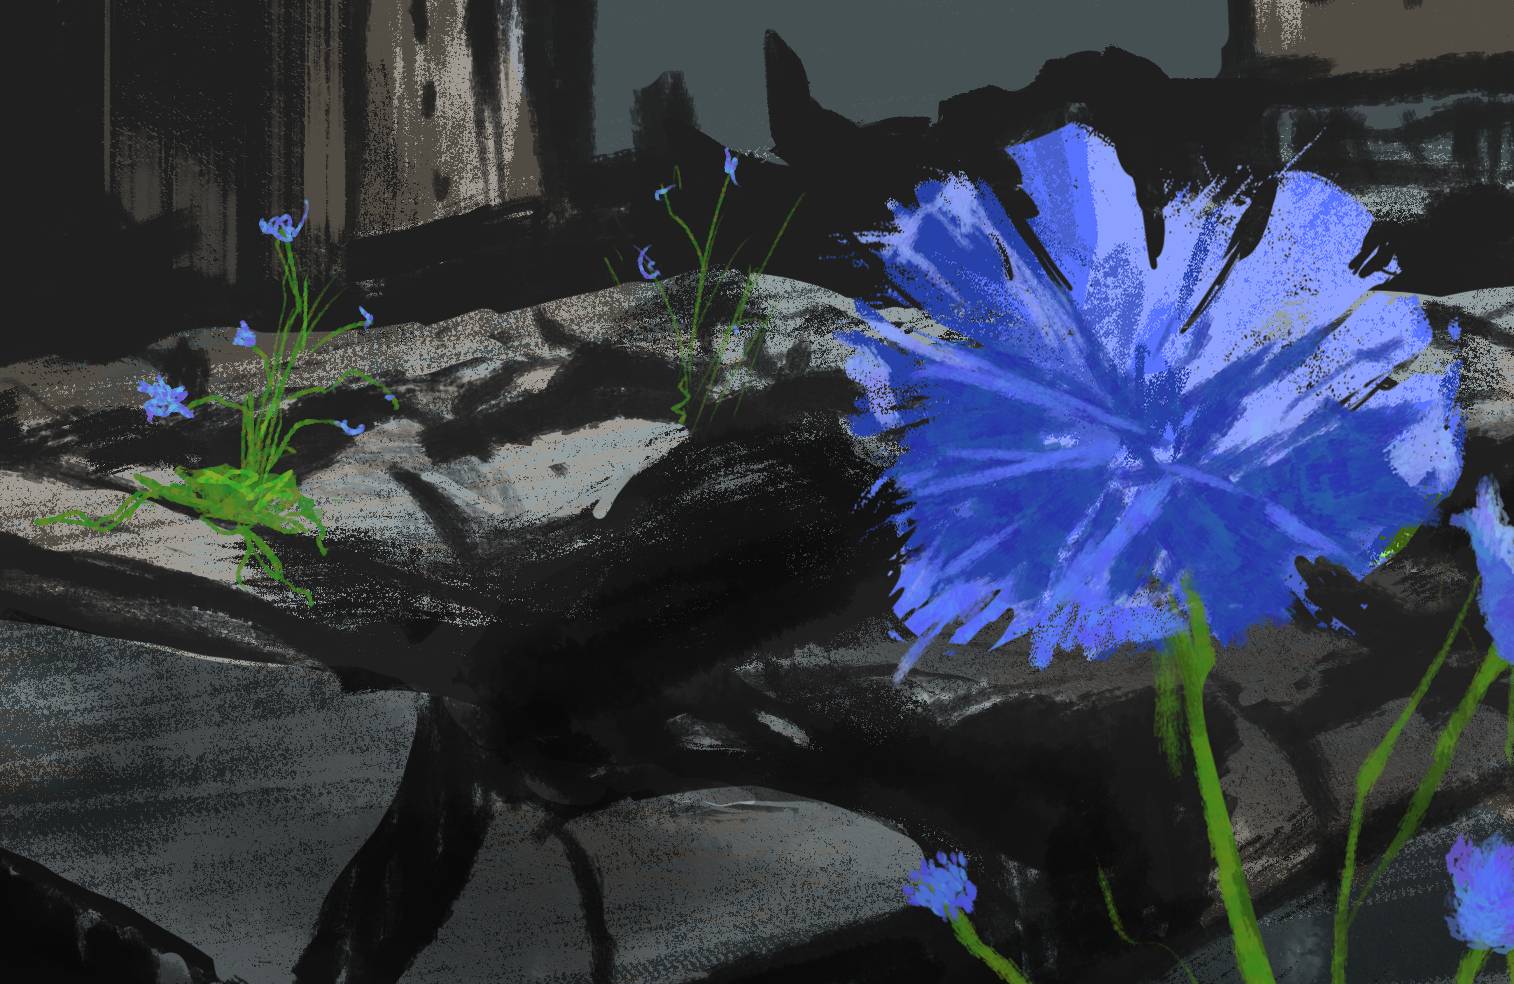 ilustracja przedstawia kwiat cykorii na tle ruin miasta